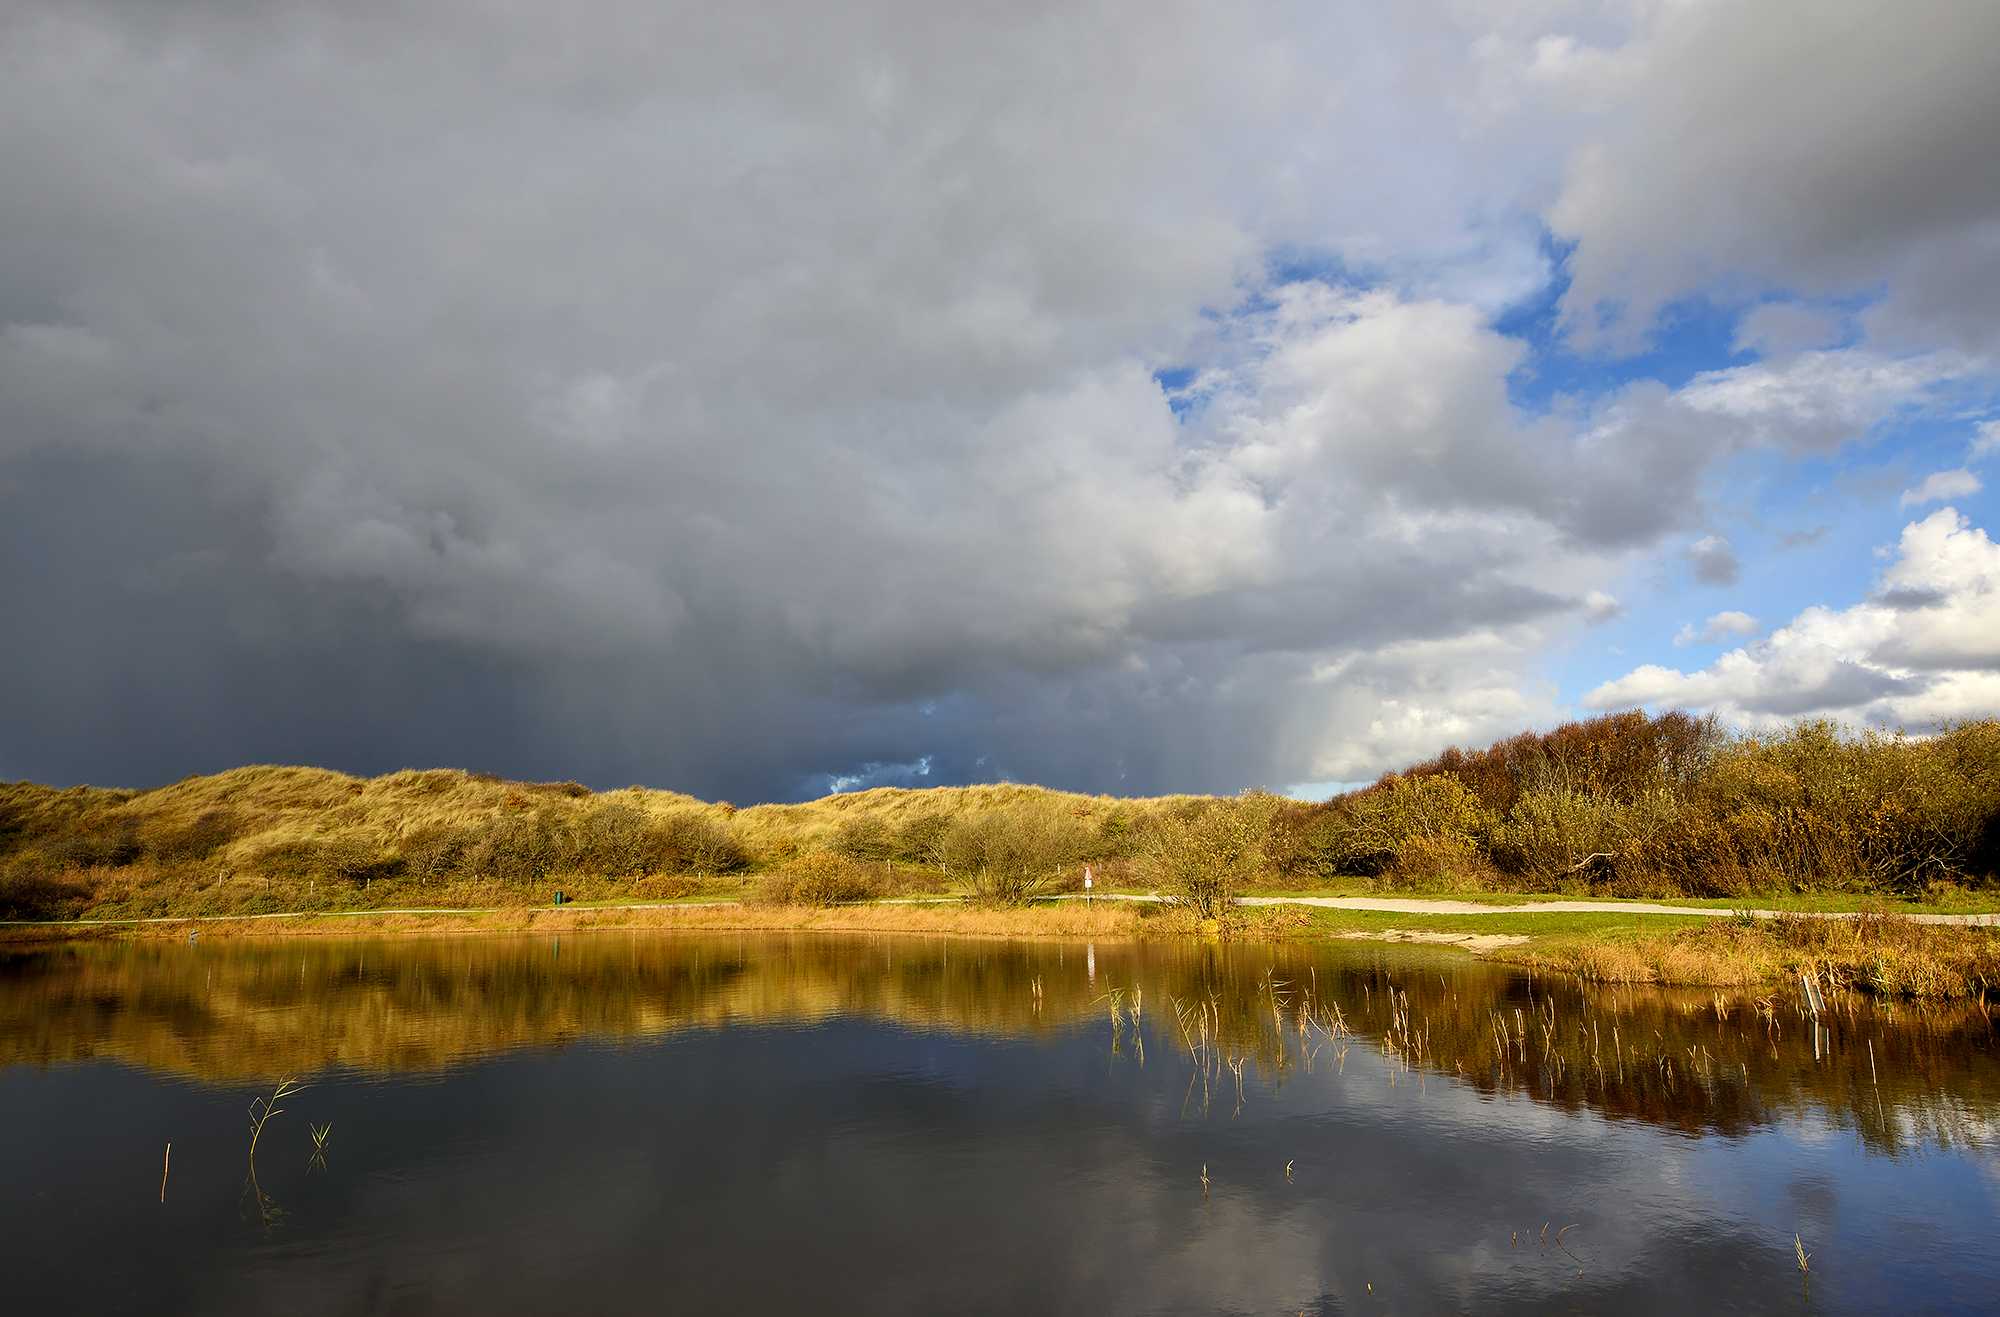 Donkere wolkenlucht van regenbui weerspiegelt in het stille water van een duinmeer in de Pettermerduinen bij Petten.